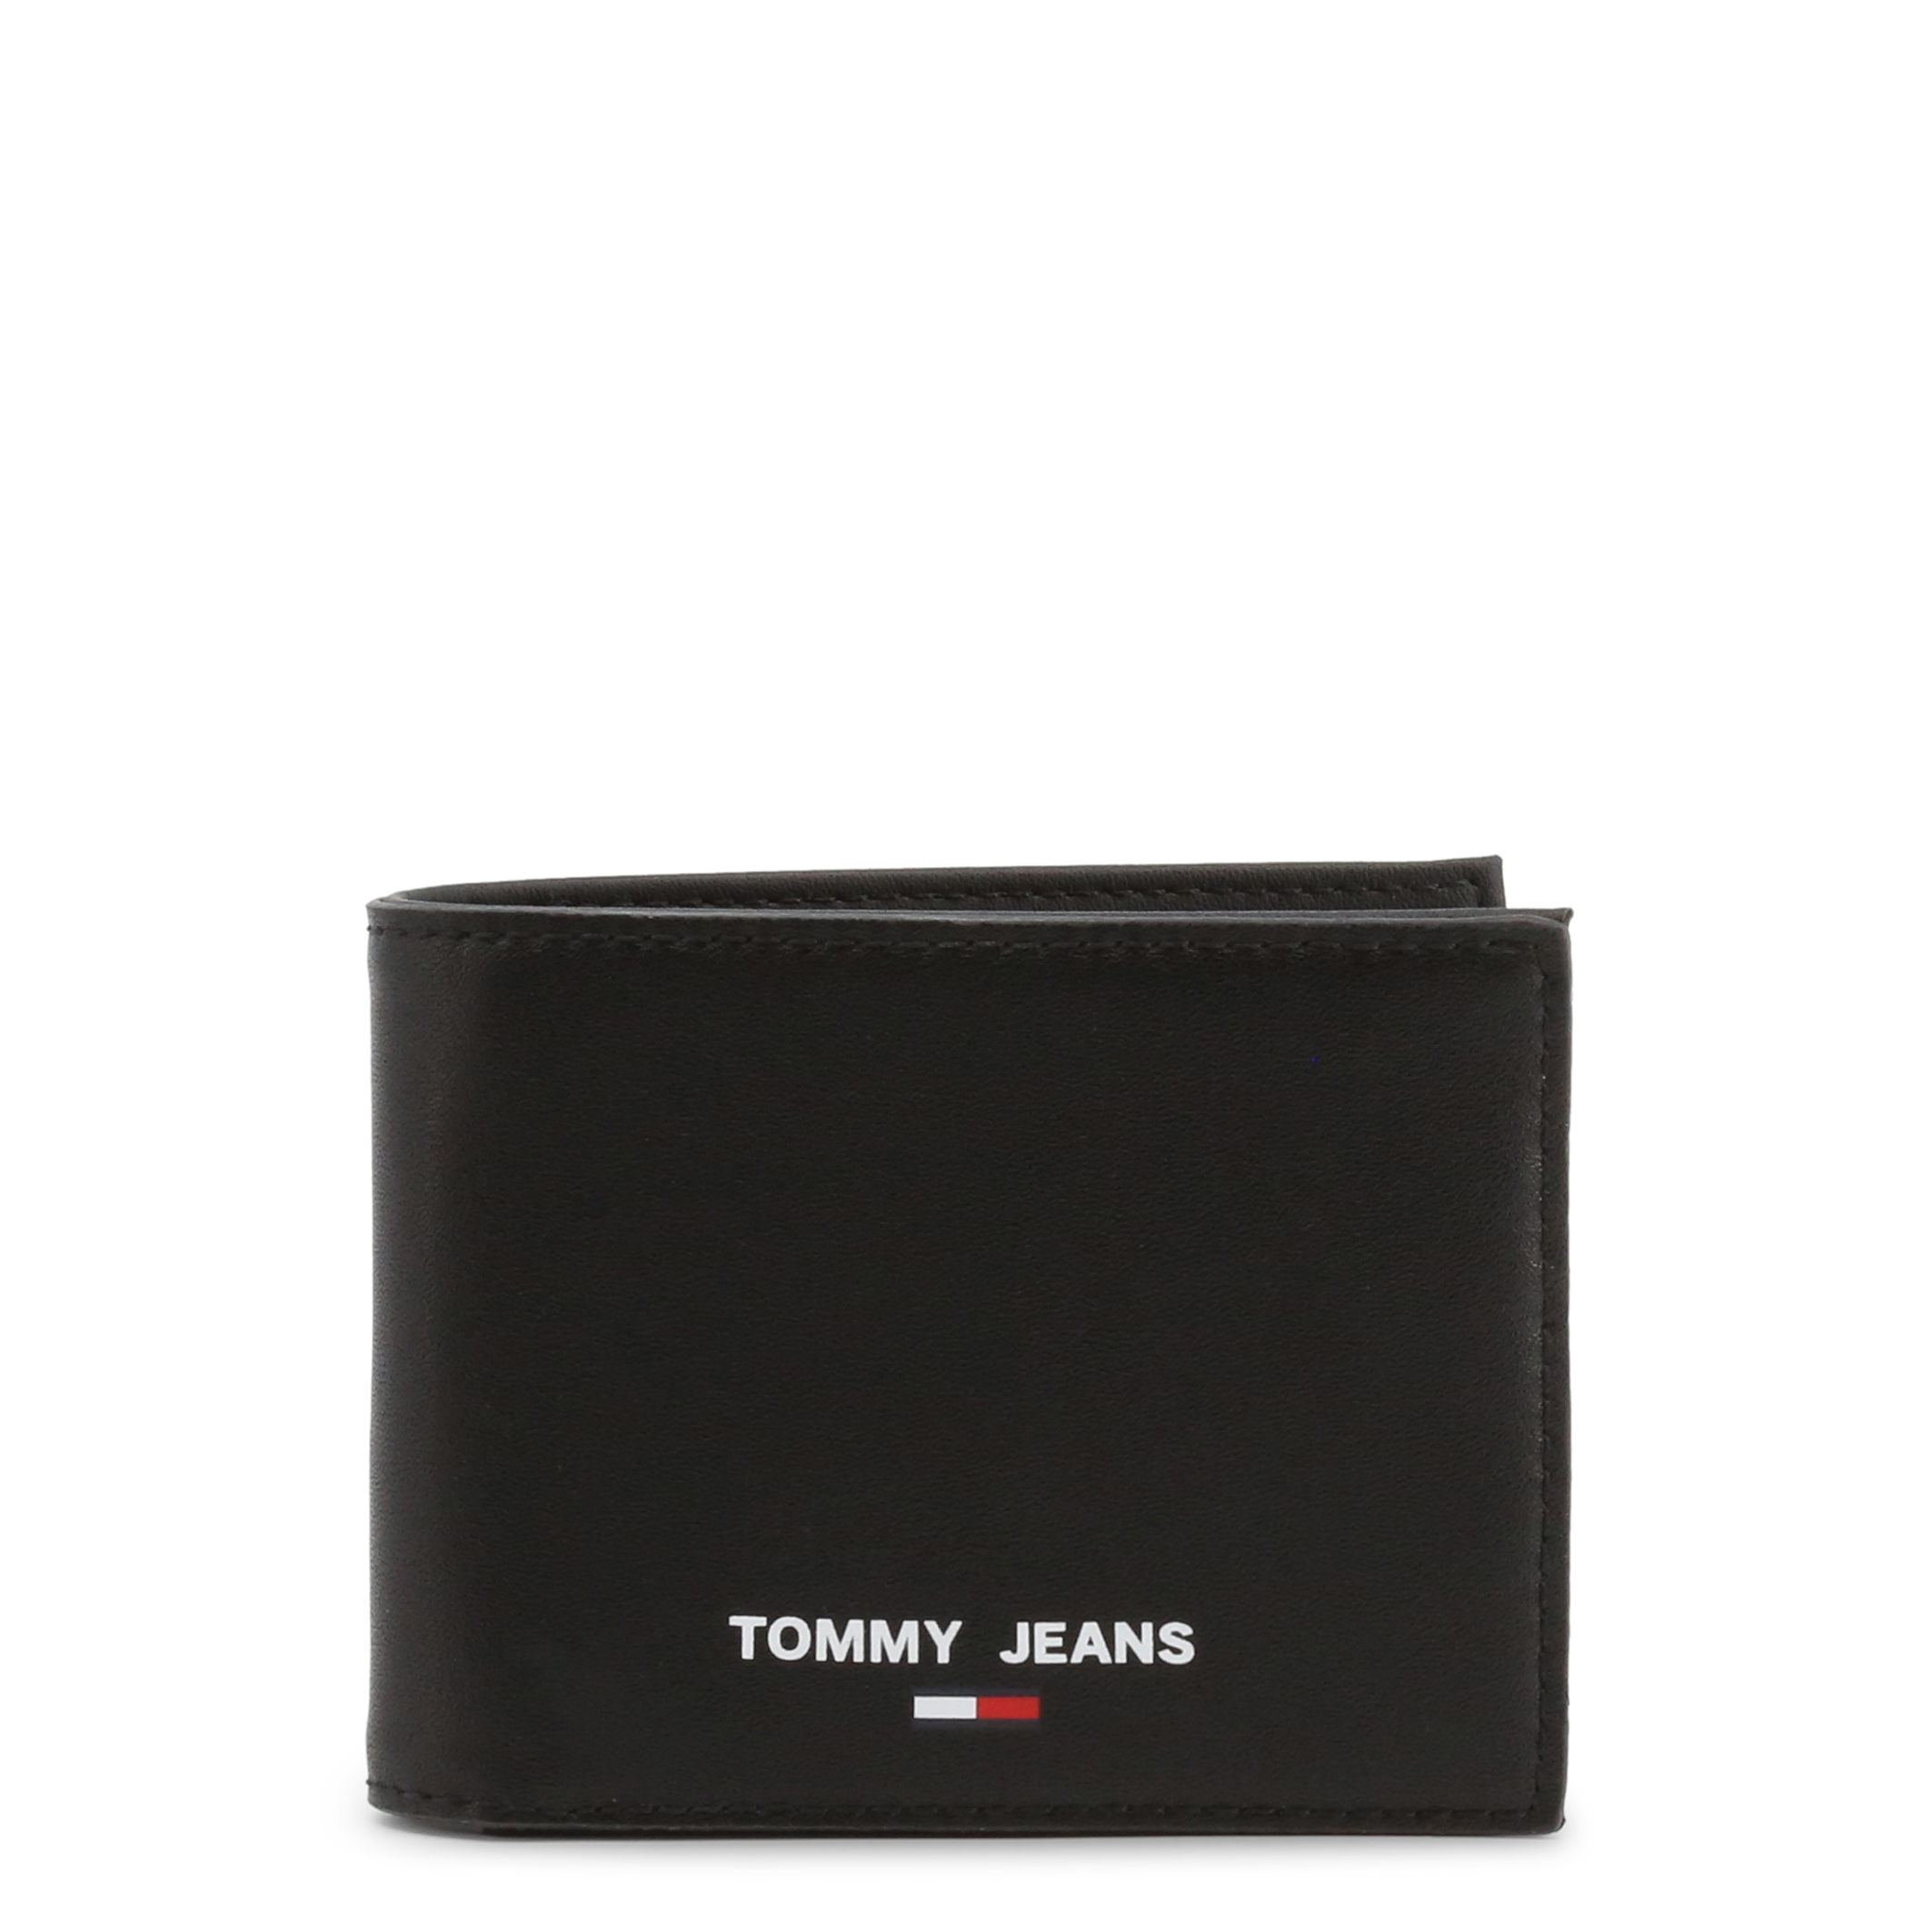 Tommy Hilfiger Black Wallets for Men - AM0AM10417